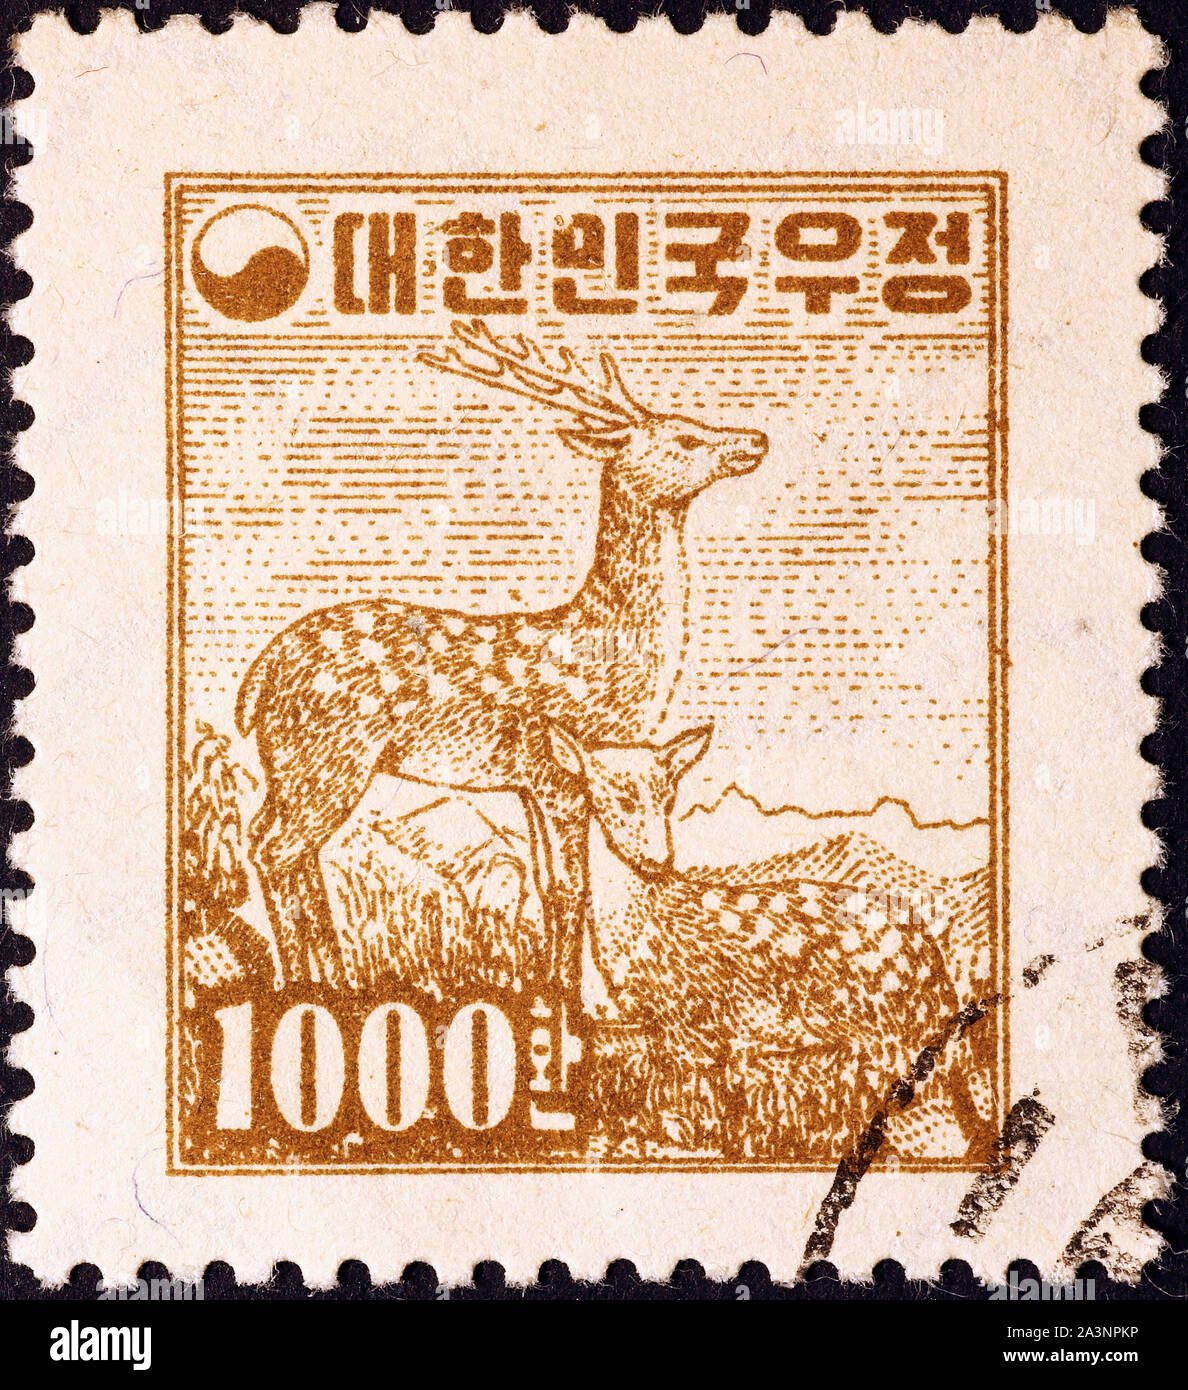 Le cerf sika sur de vieux potage japonais stamp Banque D'Images